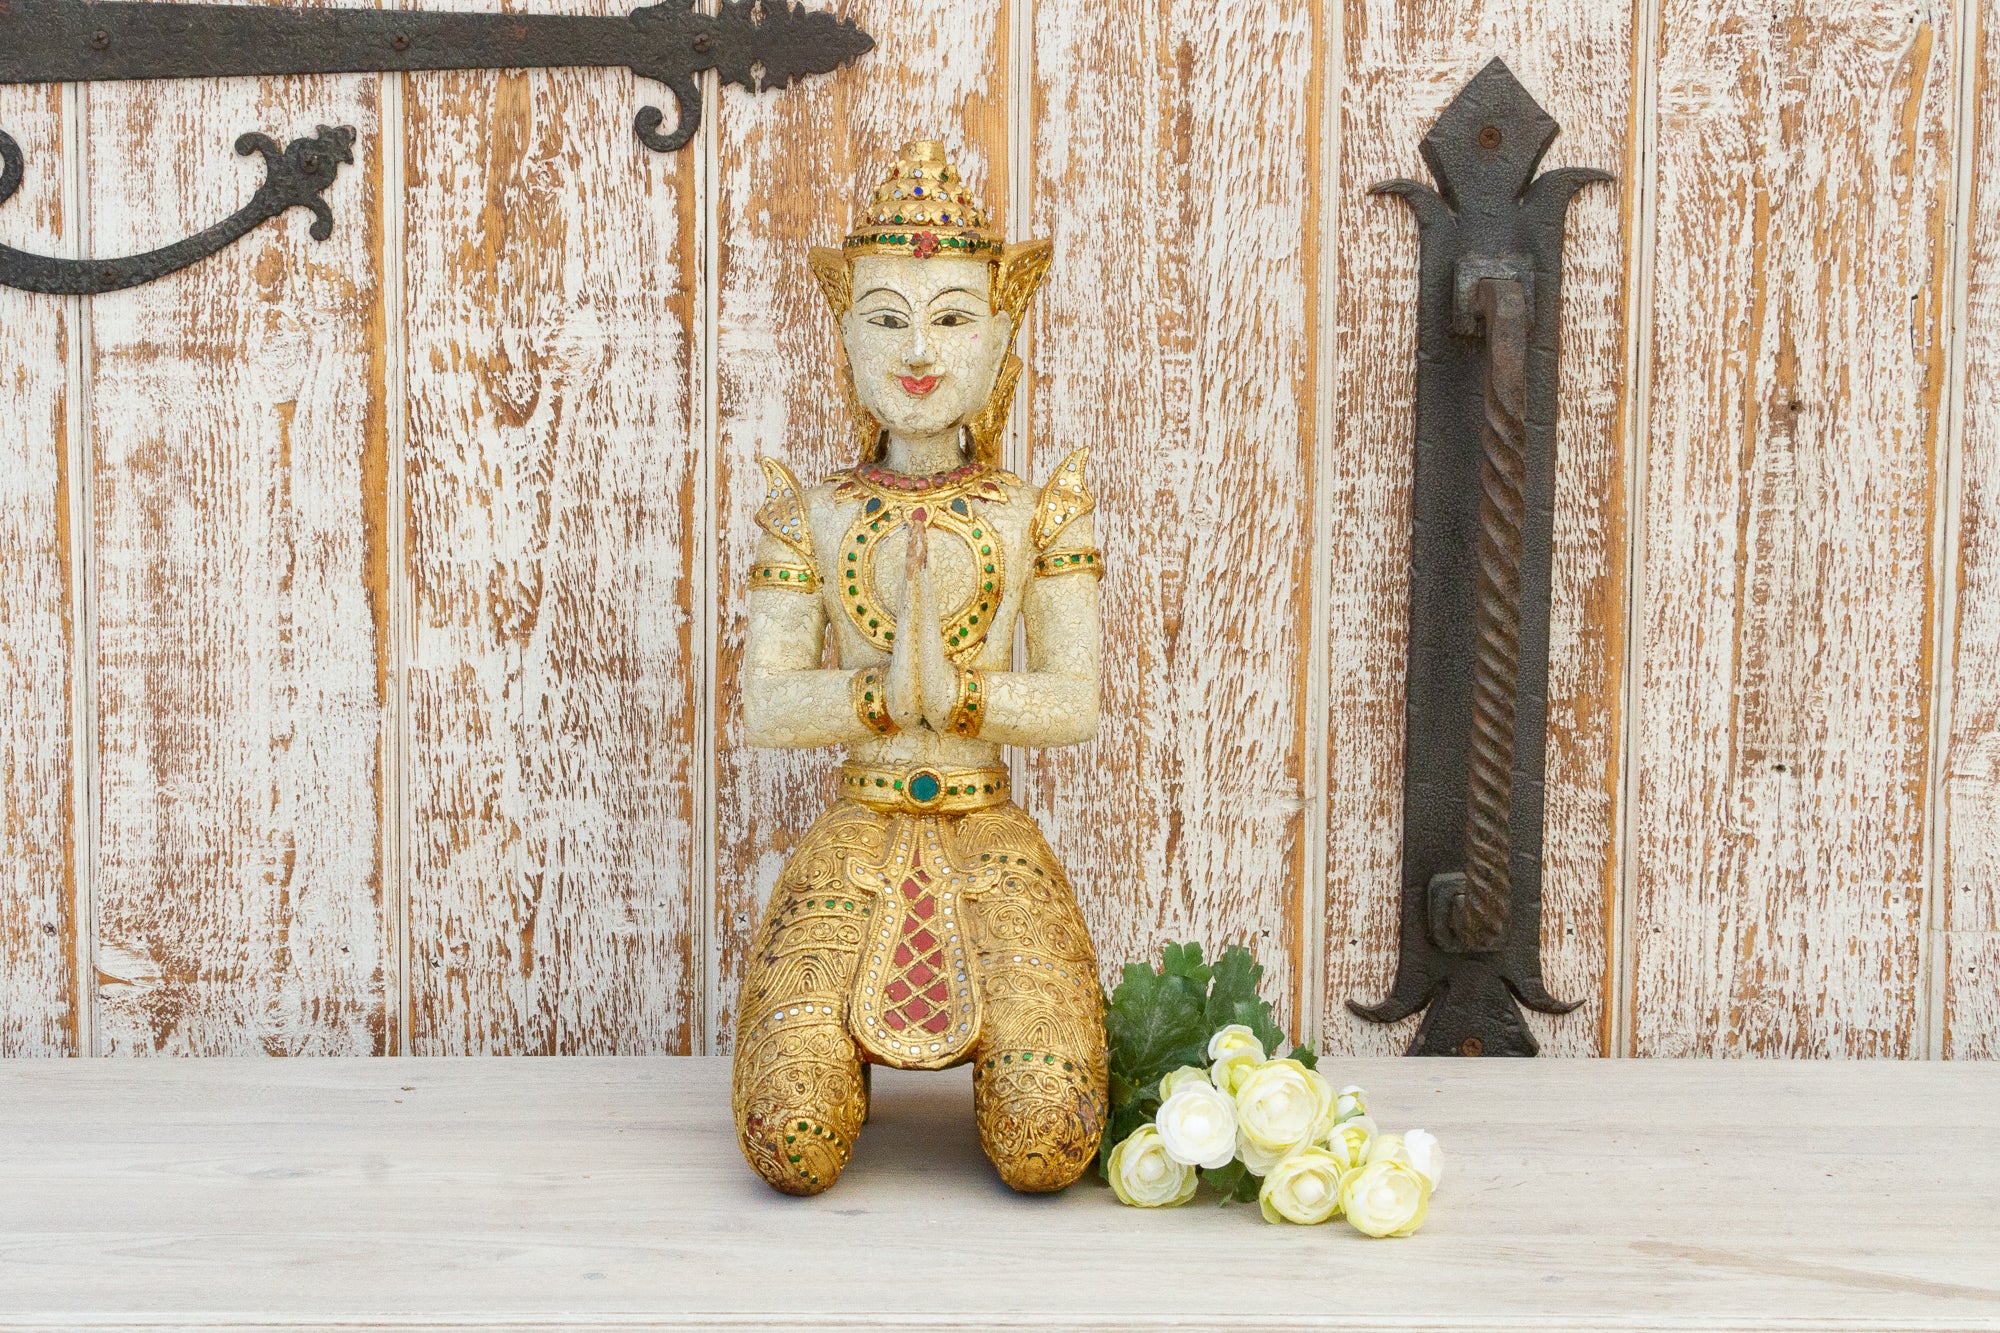 DE-COR | Ispirazione globale, Buddha inginocchiato d'epoca in Birmania, dorato e bianco